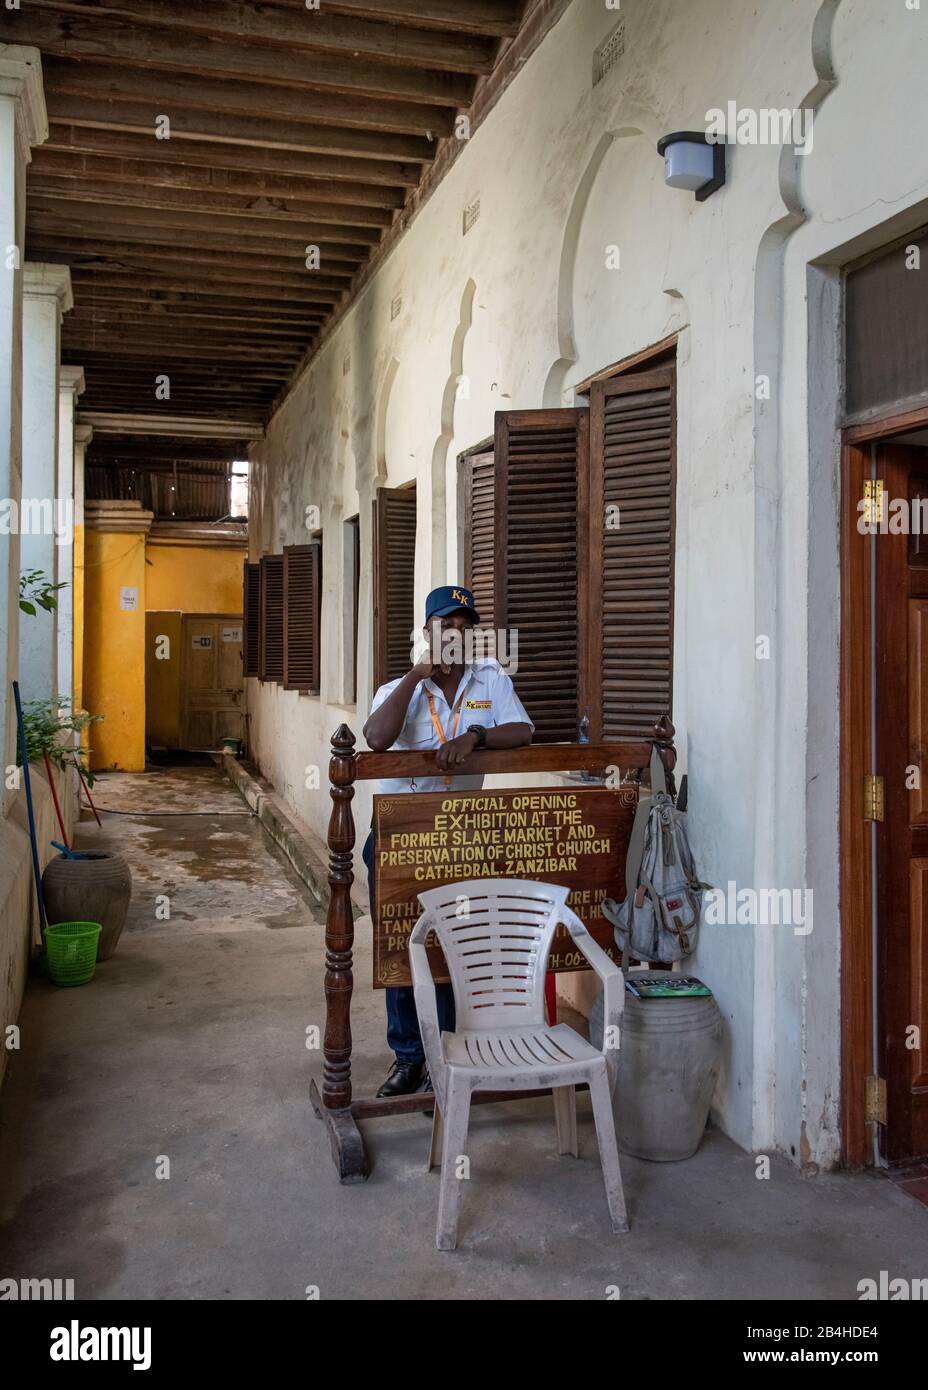 Tanzania, Isola di Zanzibar: Chiesa anglicana in Stone Town, costruita sul sito del vecchio mercato degli schiavi, come memoriale contro il commercio degli schiavi. Ingresso alla chiesa. Foto Stock